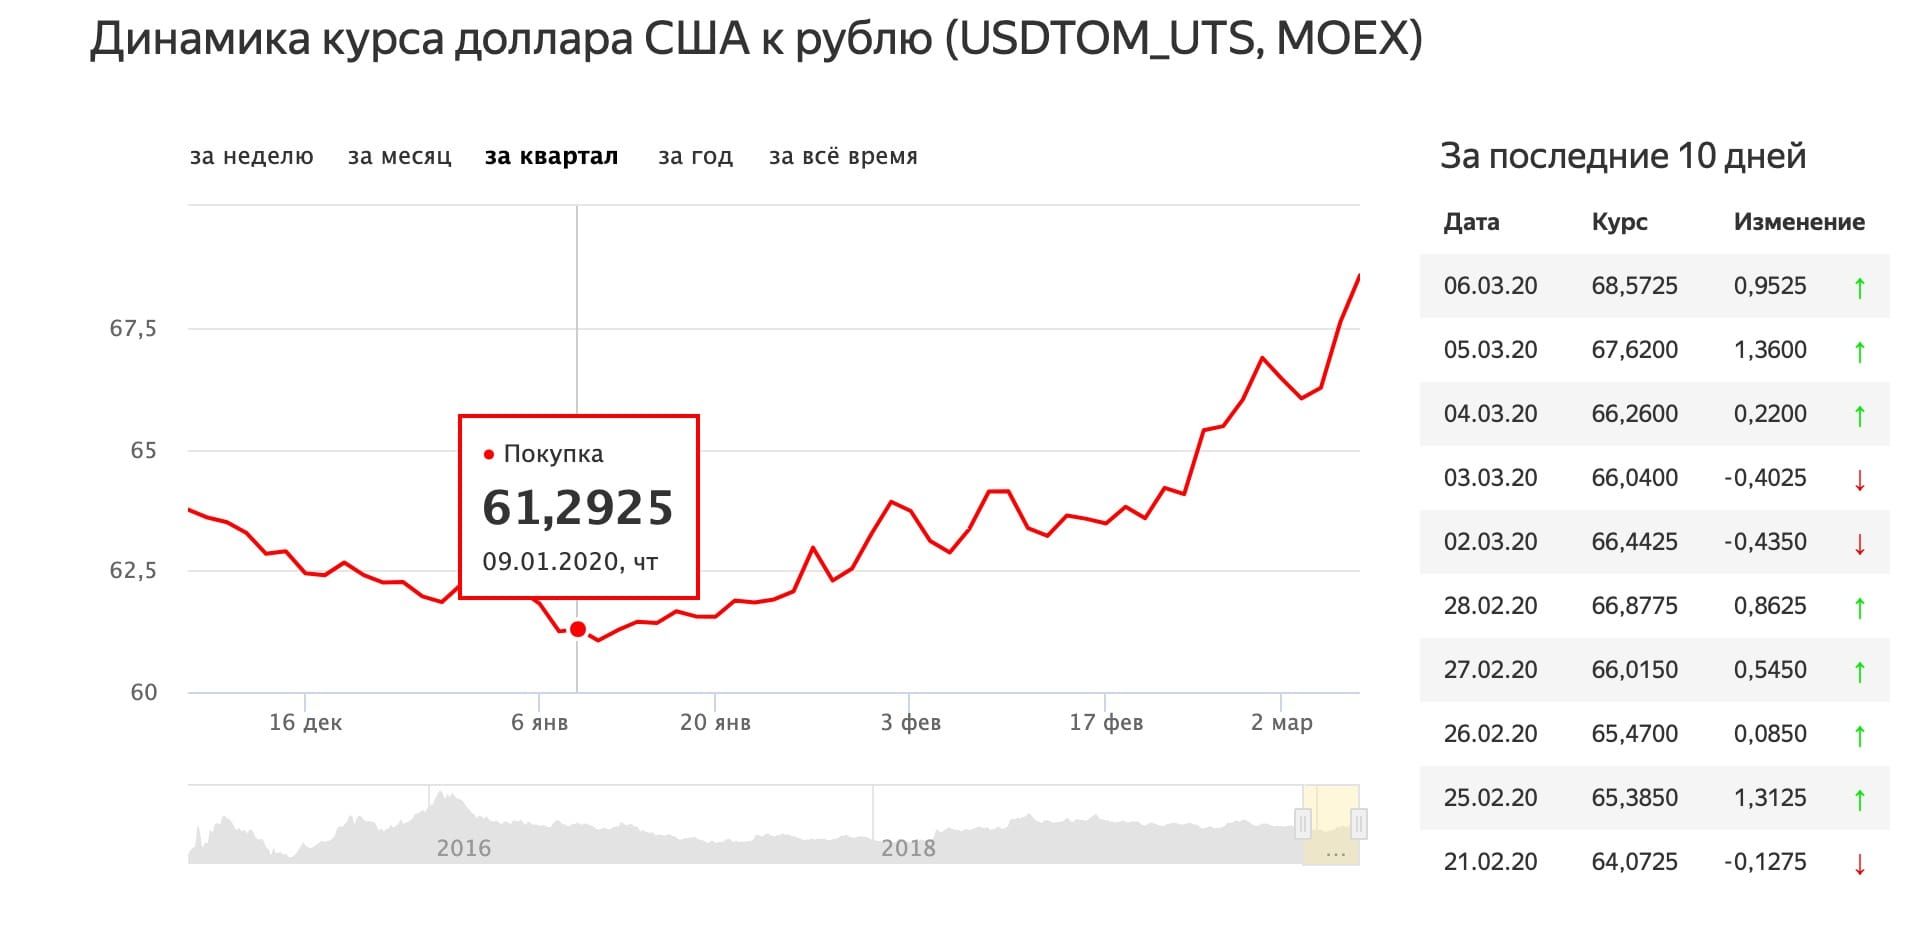 Соотношение российского рубля и тайского бата